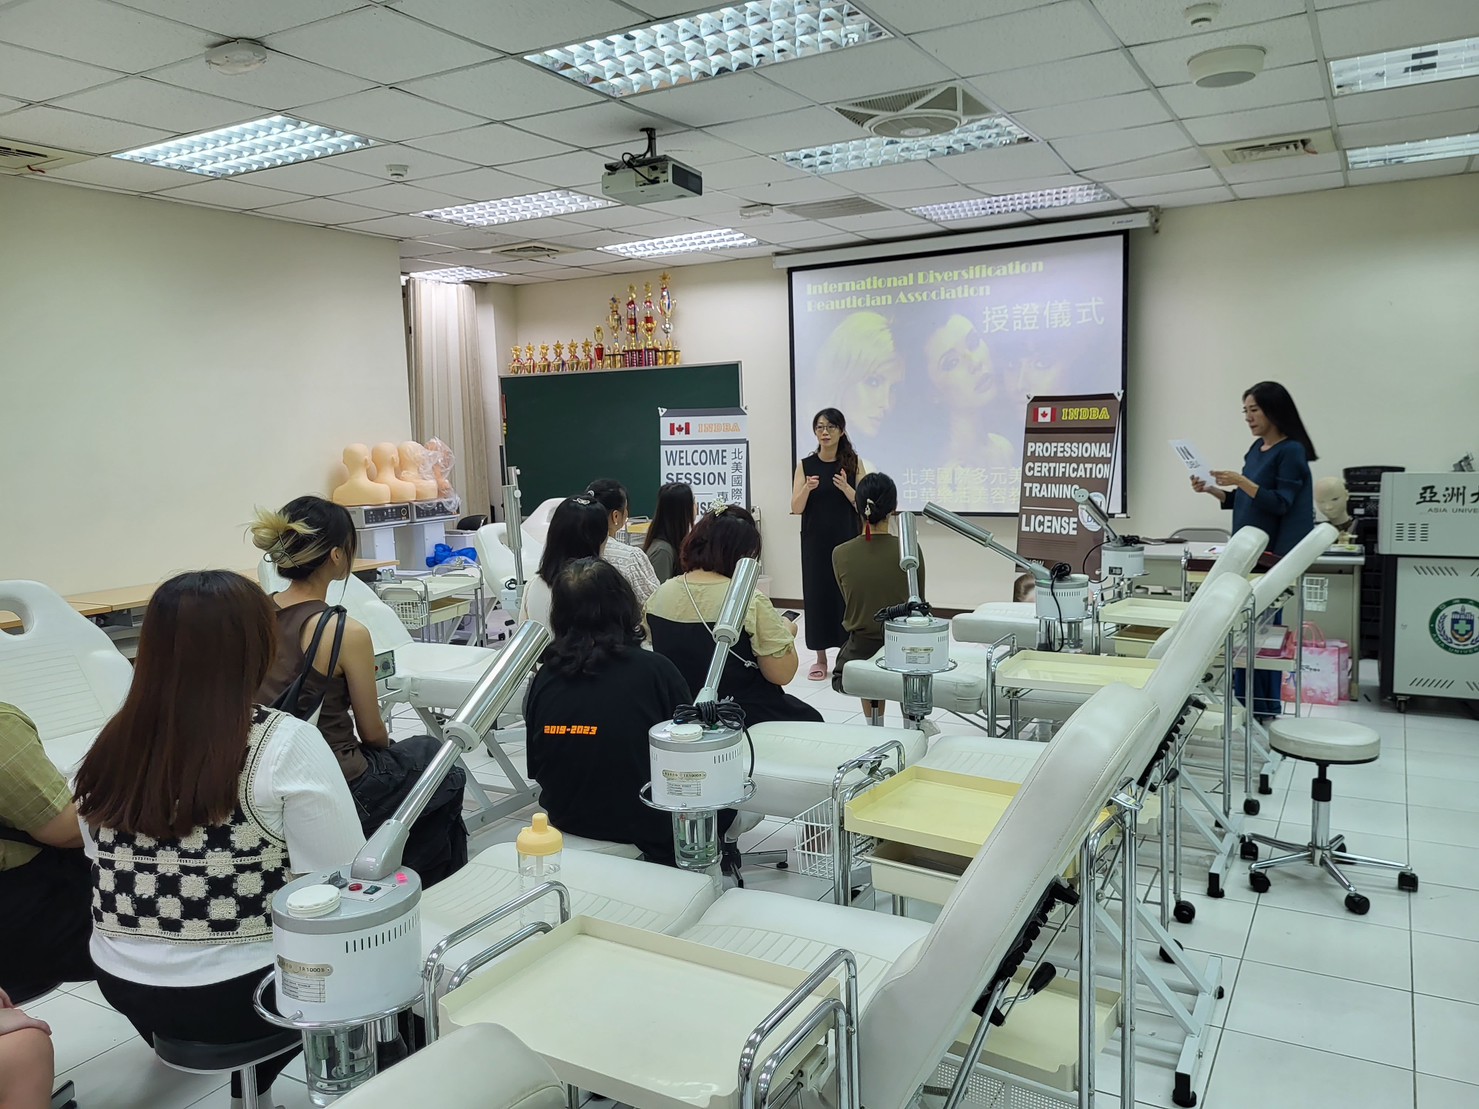 圖為亞大保健系同學，在專業美容教室準備考照訓練上課情形。